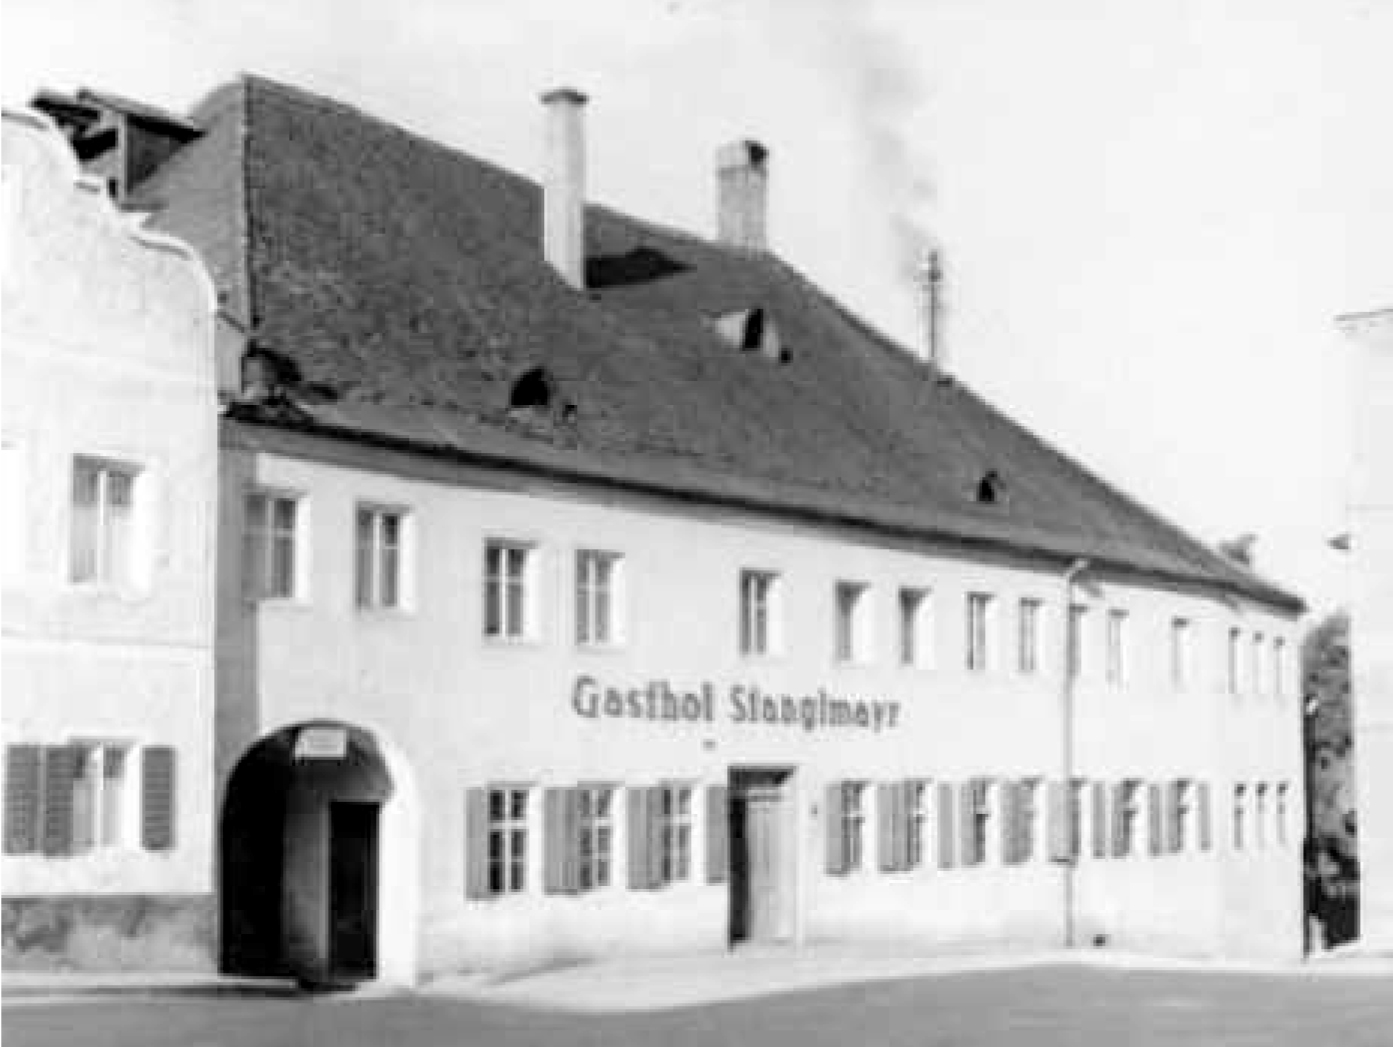 Historische Aufnahme vom Gasthaus Stanglmayr, Quelle: Archiv Markt Velden